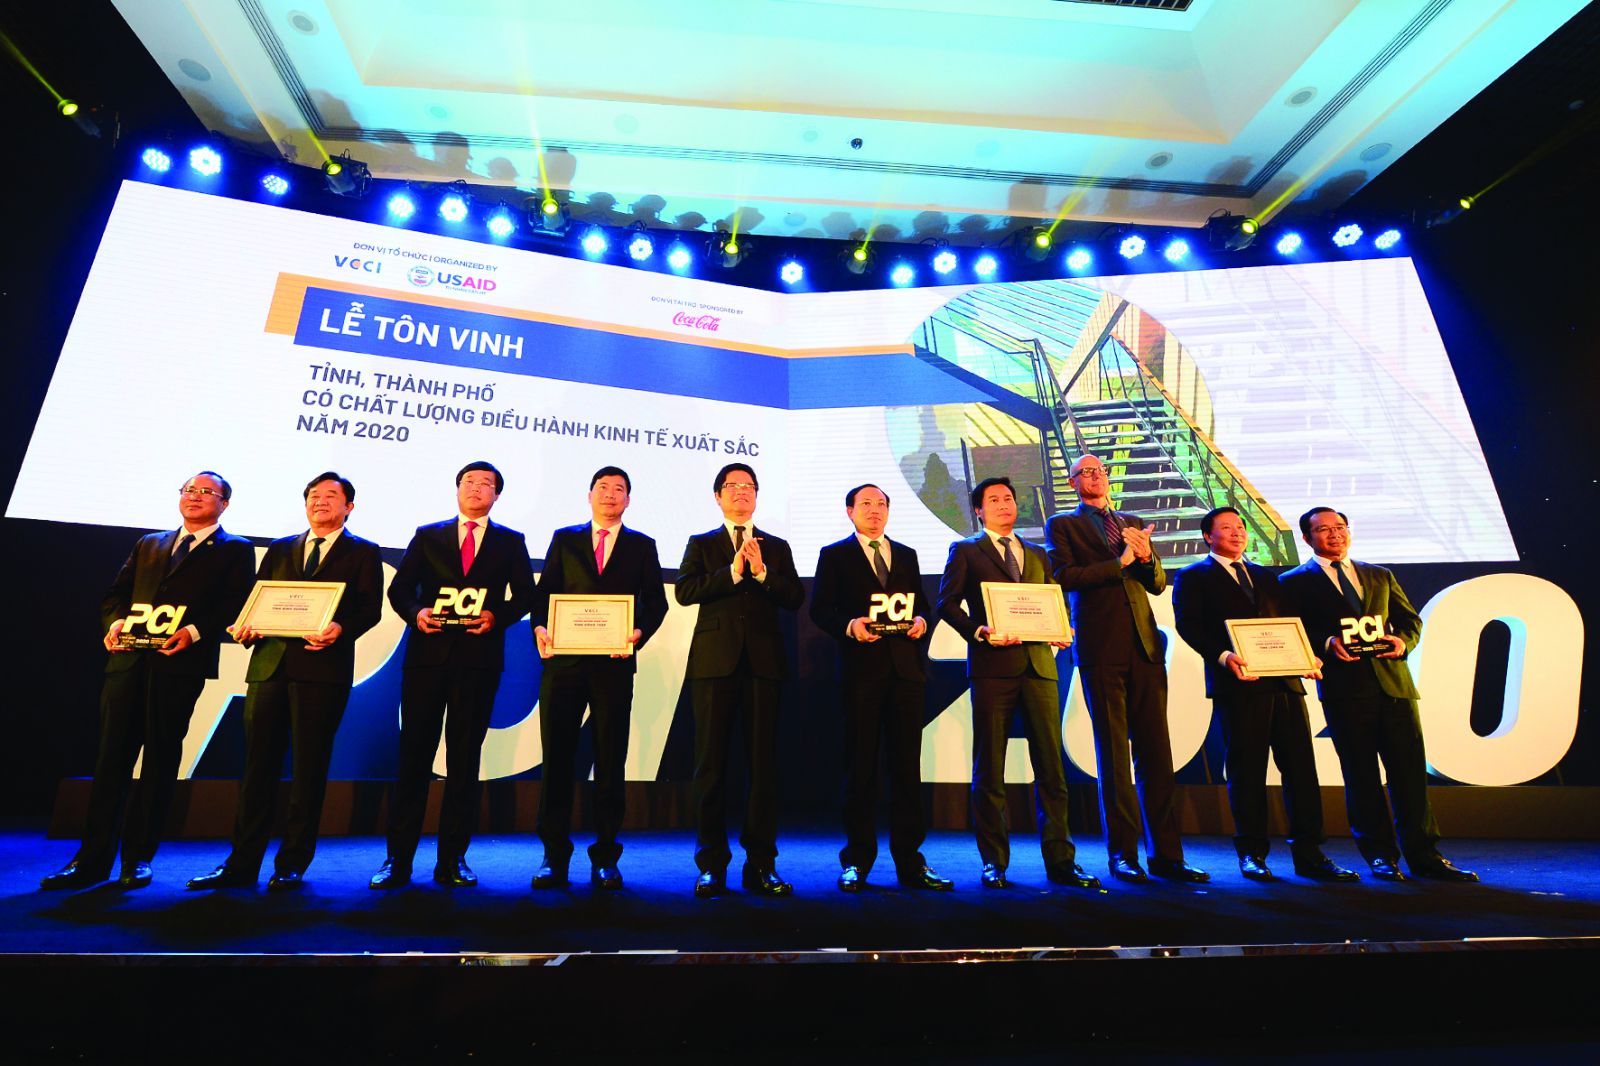 Phòng Thương mại và Công nghiệp Việt Nam (VCCI) vừa phối hợp với Cơ quan Phát triển Quốc tế Hoa Kỳ (USAID) tổ chức lễ công bố Báo cáo thường niên Chỉ số Năng lực cạnh tranh cấp tỉnh (PCI) 2020